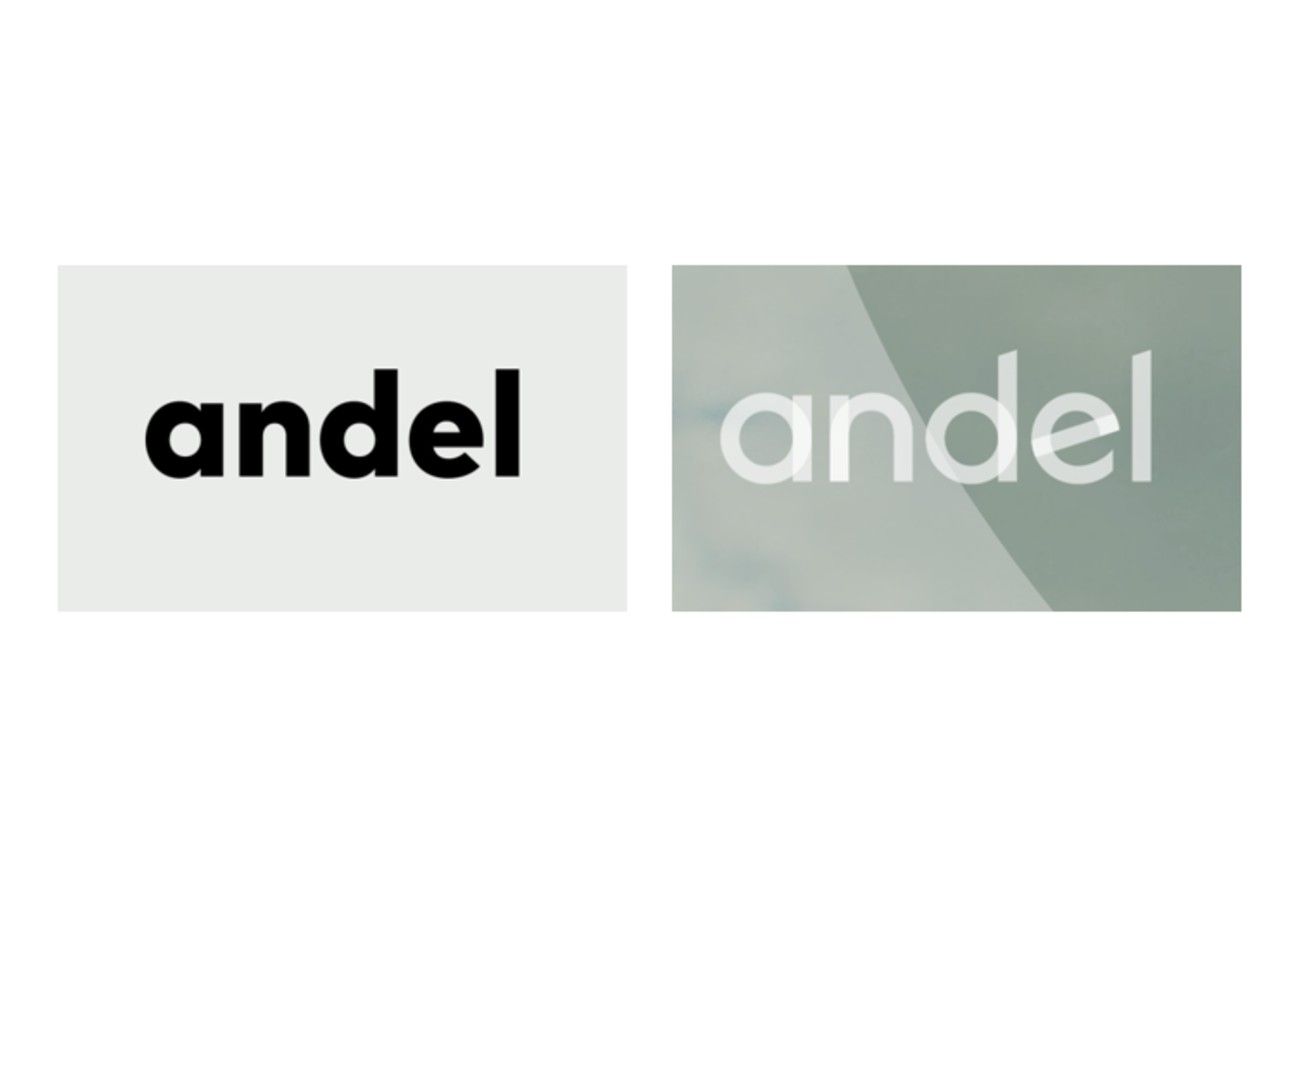 Det store danske energiselskab SEAS-NVE har skiftet navn til Andel. Der er bare et lille problem: Navnet Andel bruges allerede af et lille konsulentbureau, som hed Andel i forvejen. Er det et problem? Og hvordan og hvorfor brander det energiselskabet Andel?